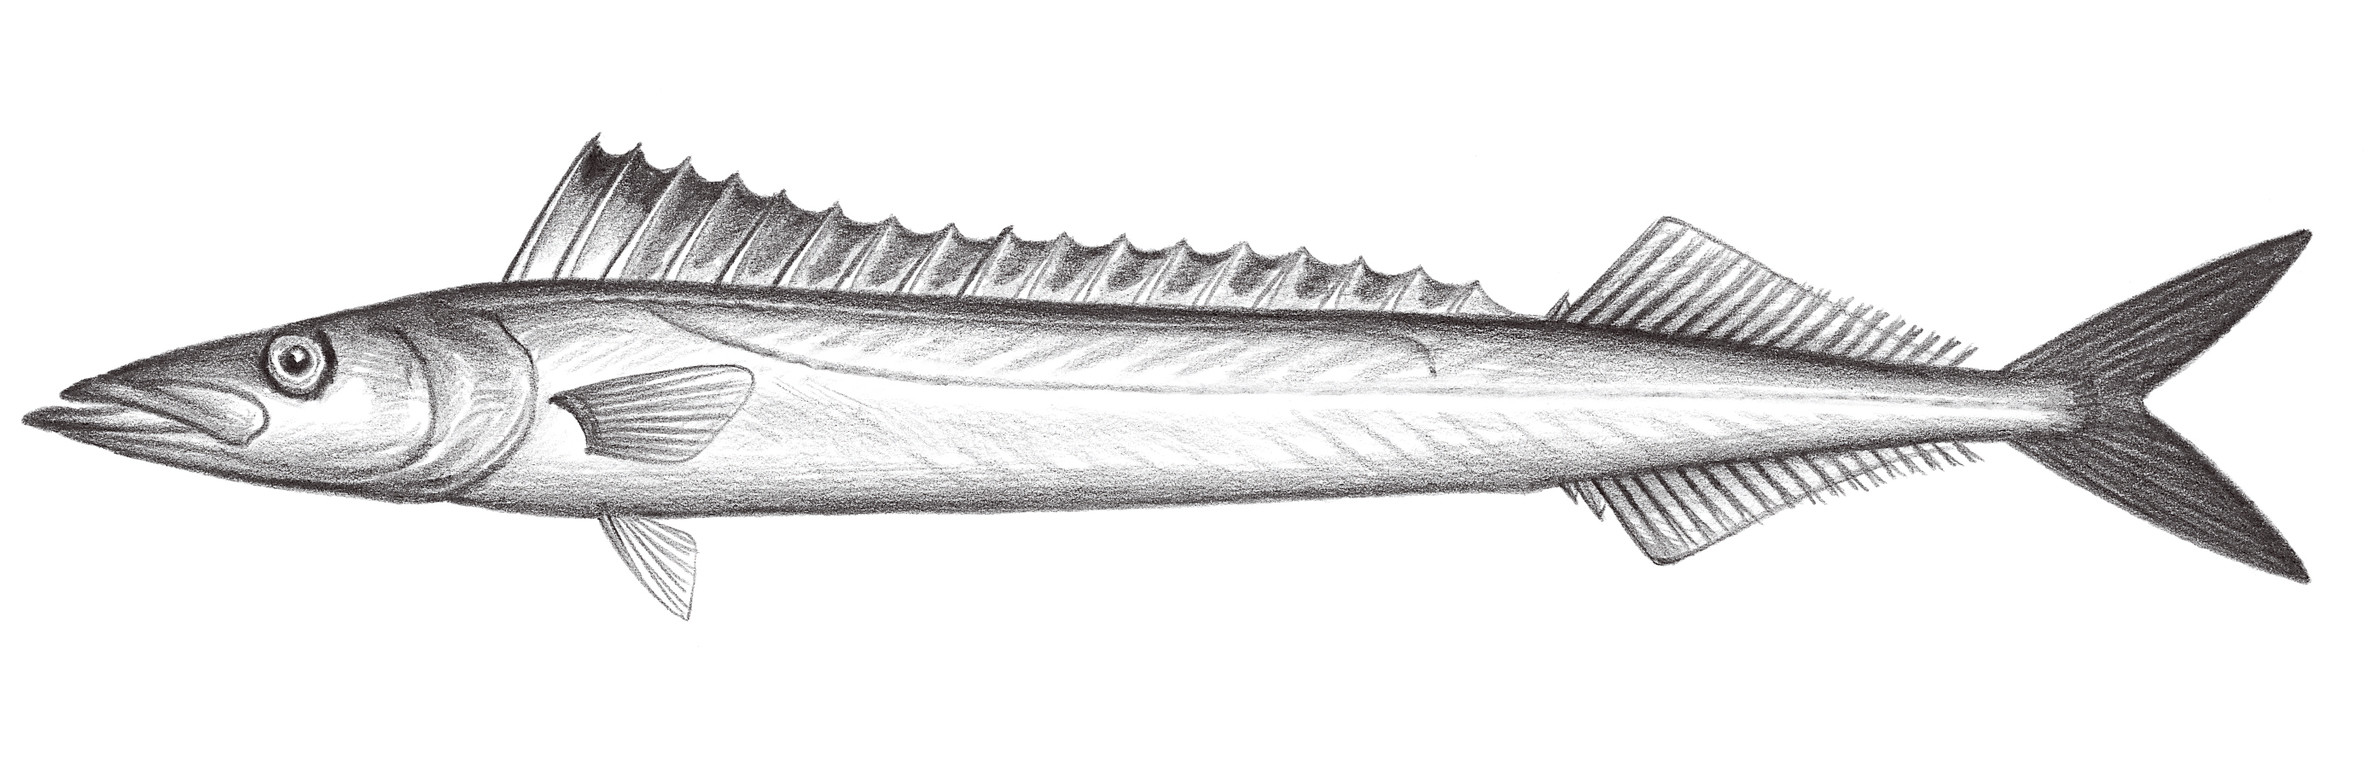 2334.	黑鰭蛇鯖 Thyrsitoides marleyi Fowler, 1929